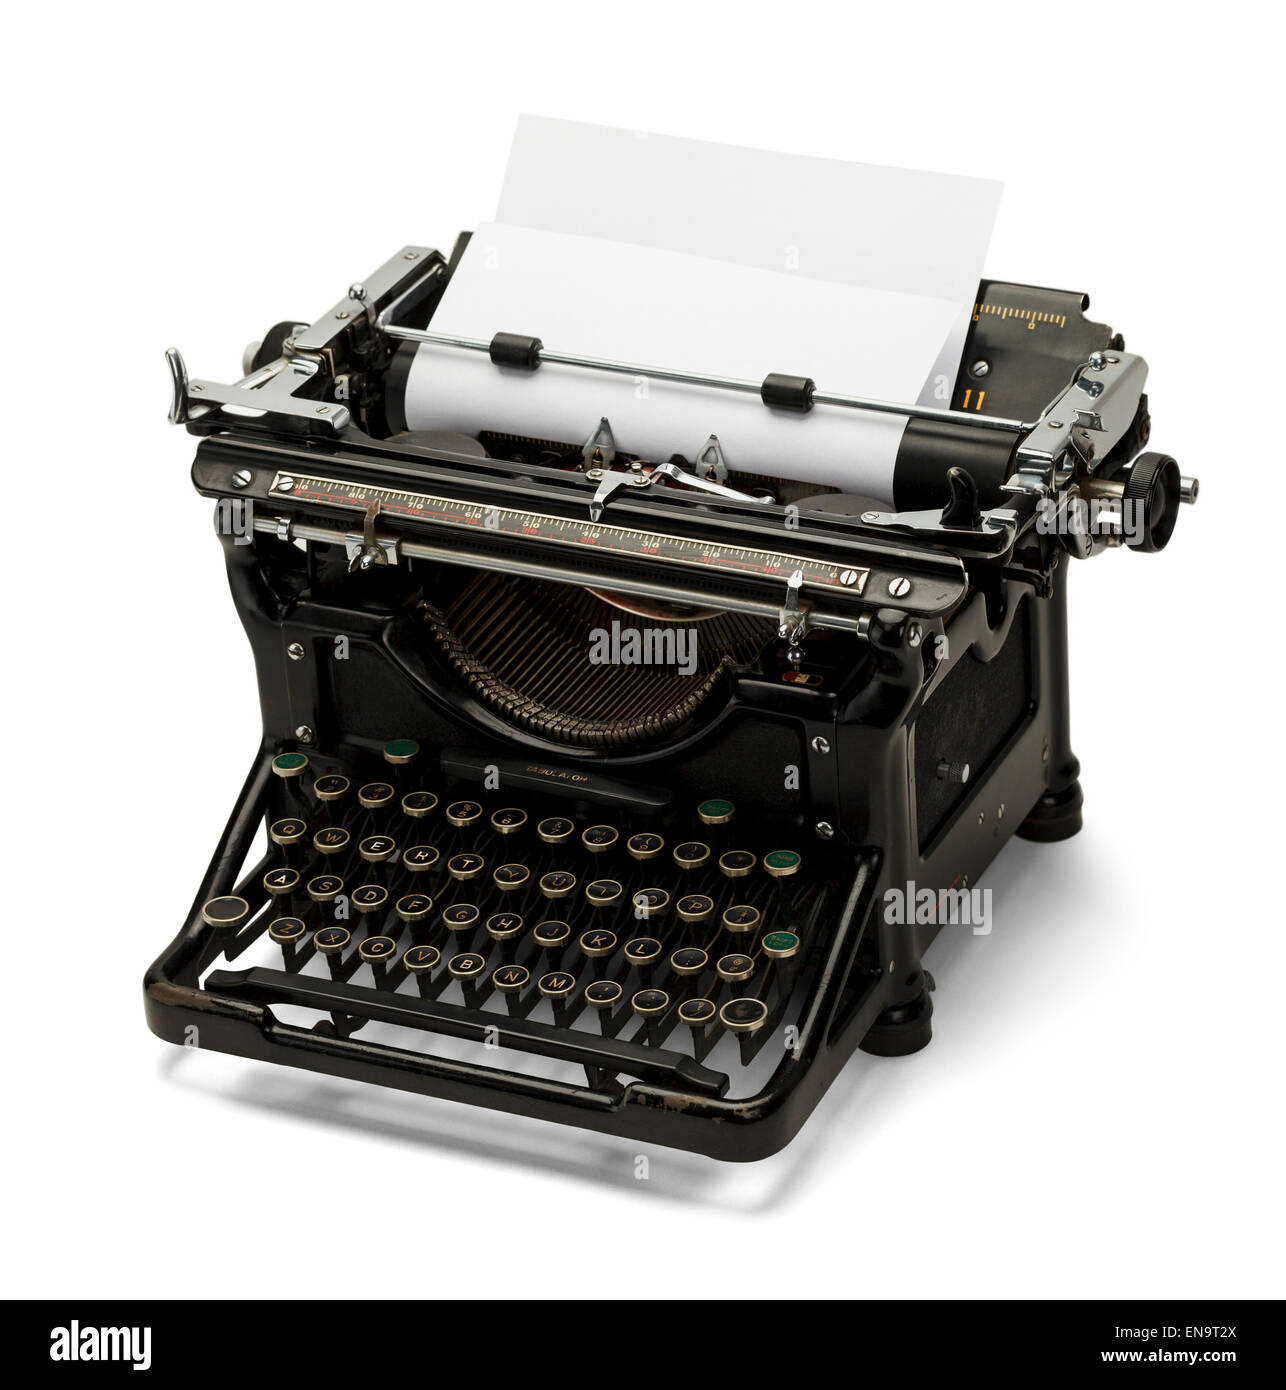 Old Retro Black Typewriter Isolated on White Background. Stock Photo